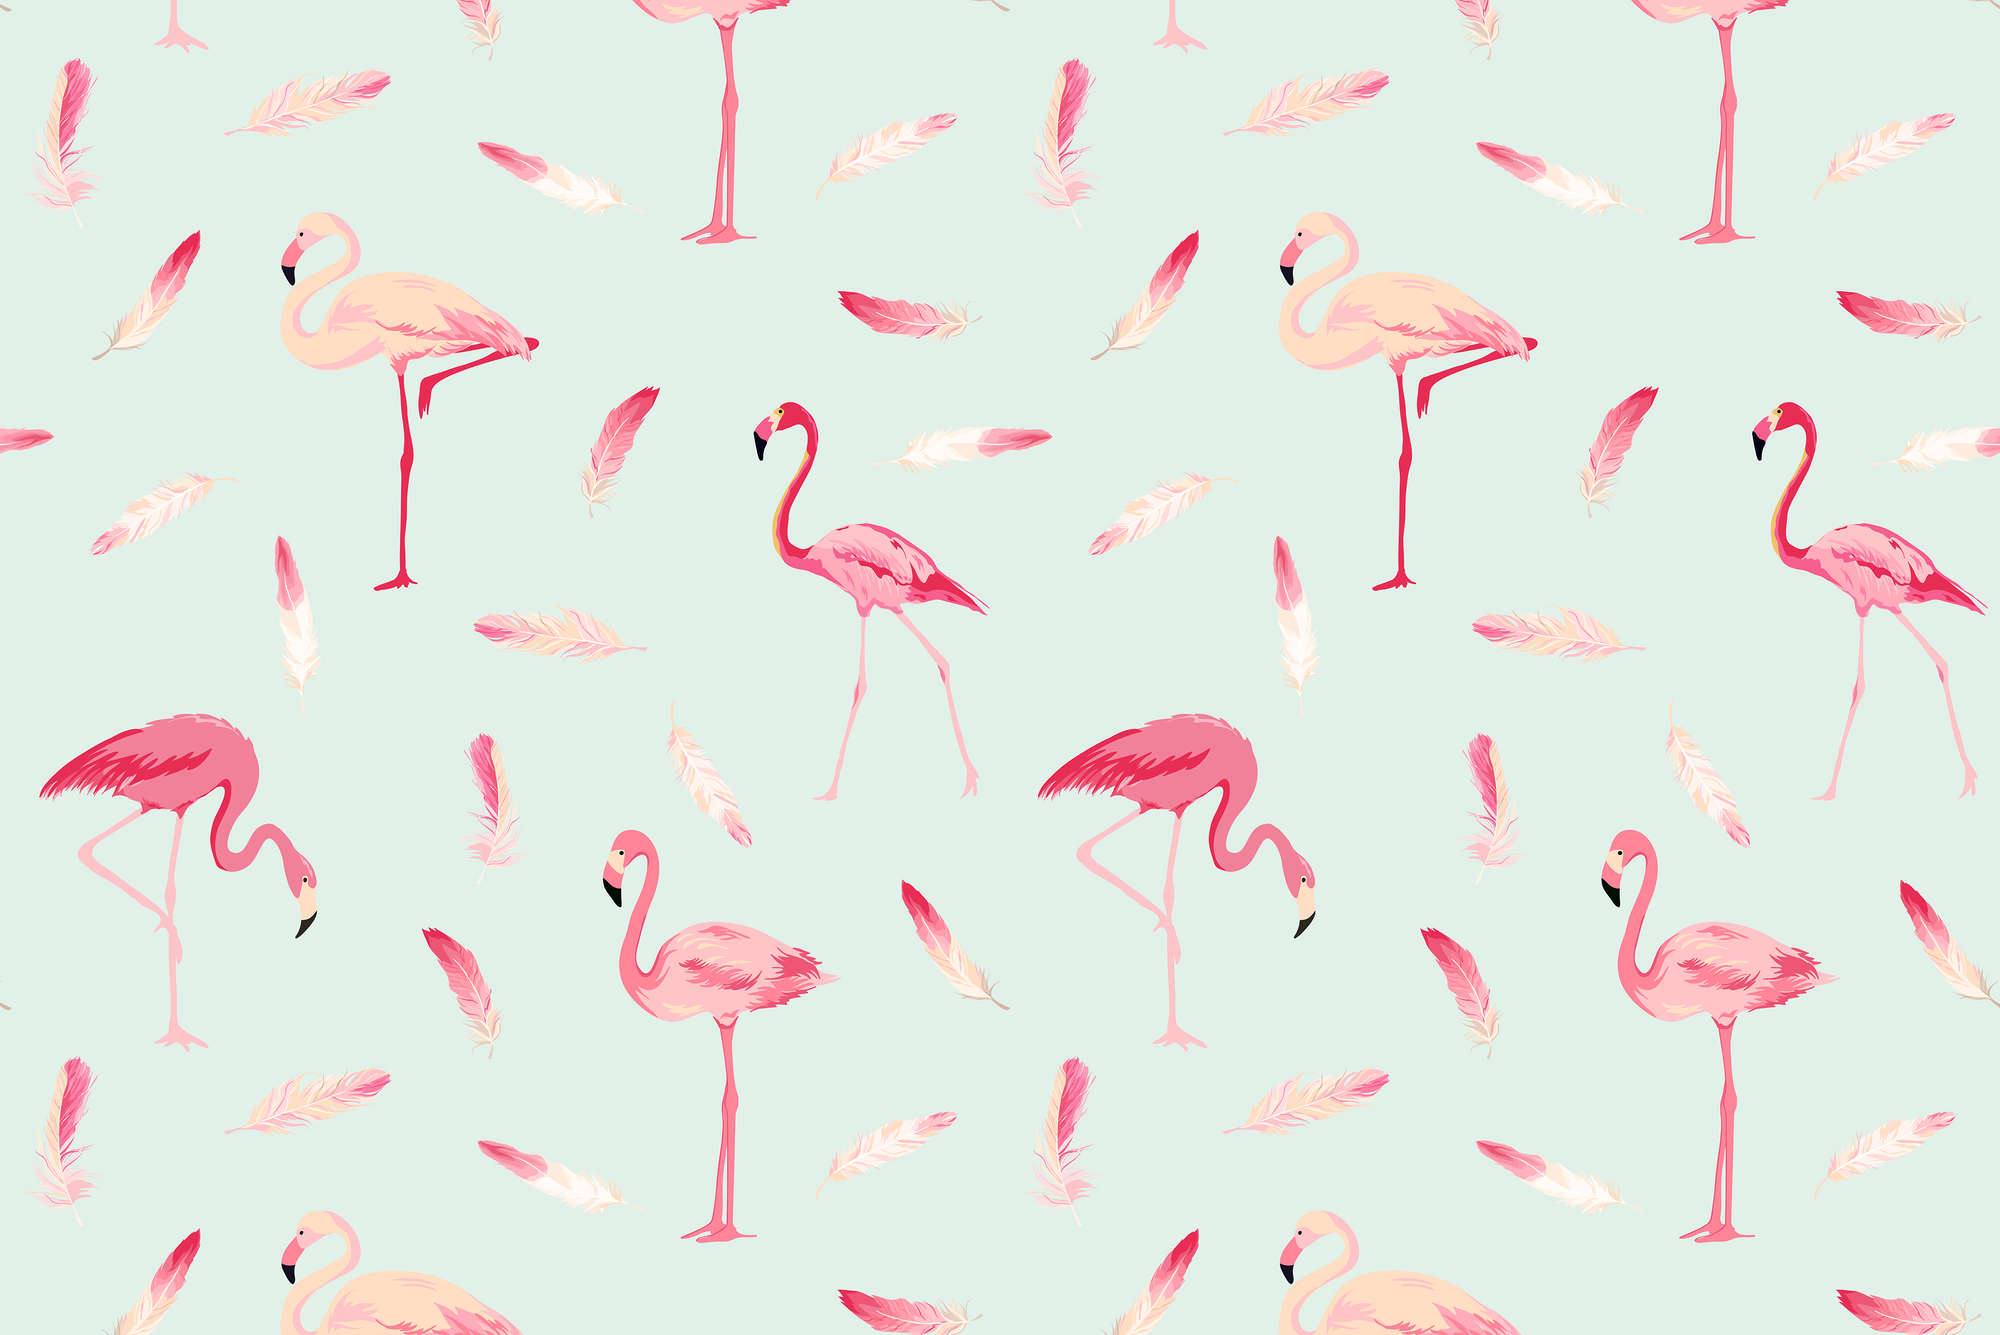             Grafisch Behang Flamingo's en Veren op Premium Smooth Fleece
        